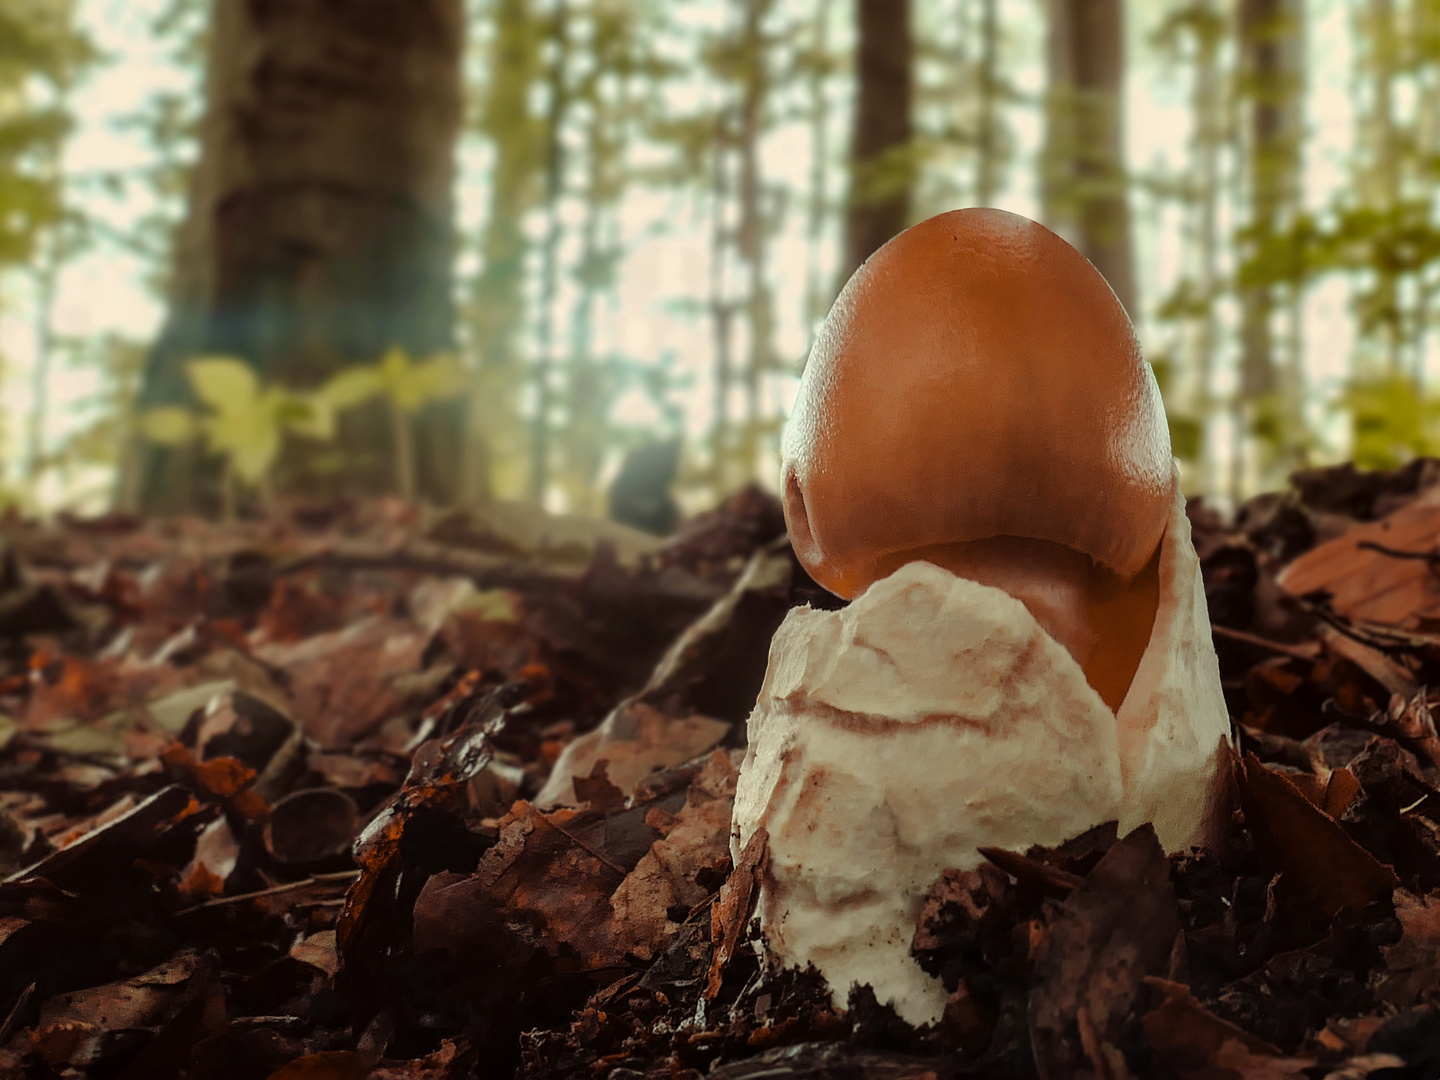 Ein kleiner Pilz steht im Walde